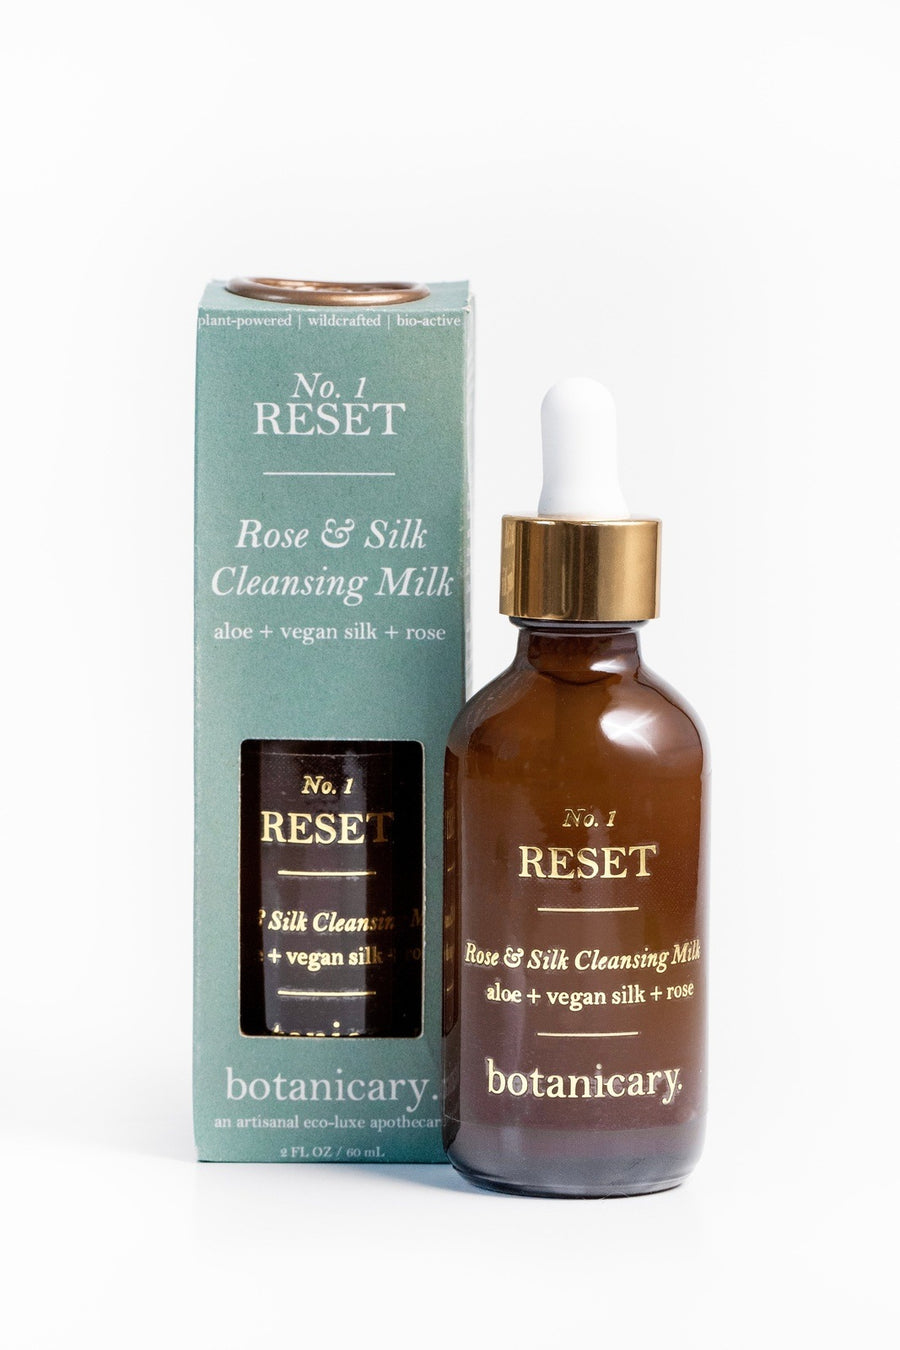 BOTANICARY No. 1 RESET - Rose & Silk Cleansing Milk